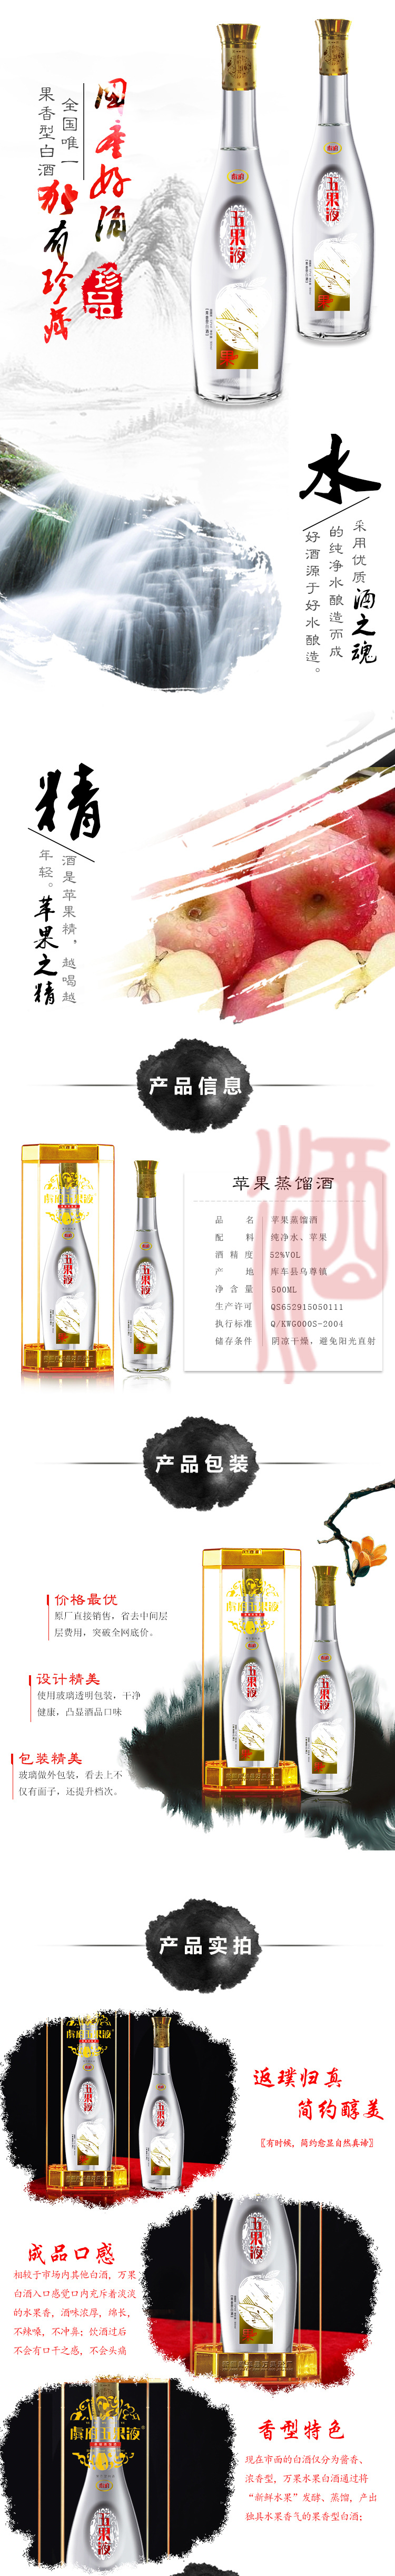 新疆天然水果酒 虞府万果液 苹果蒸馏酒厂家直销500ML示例图1